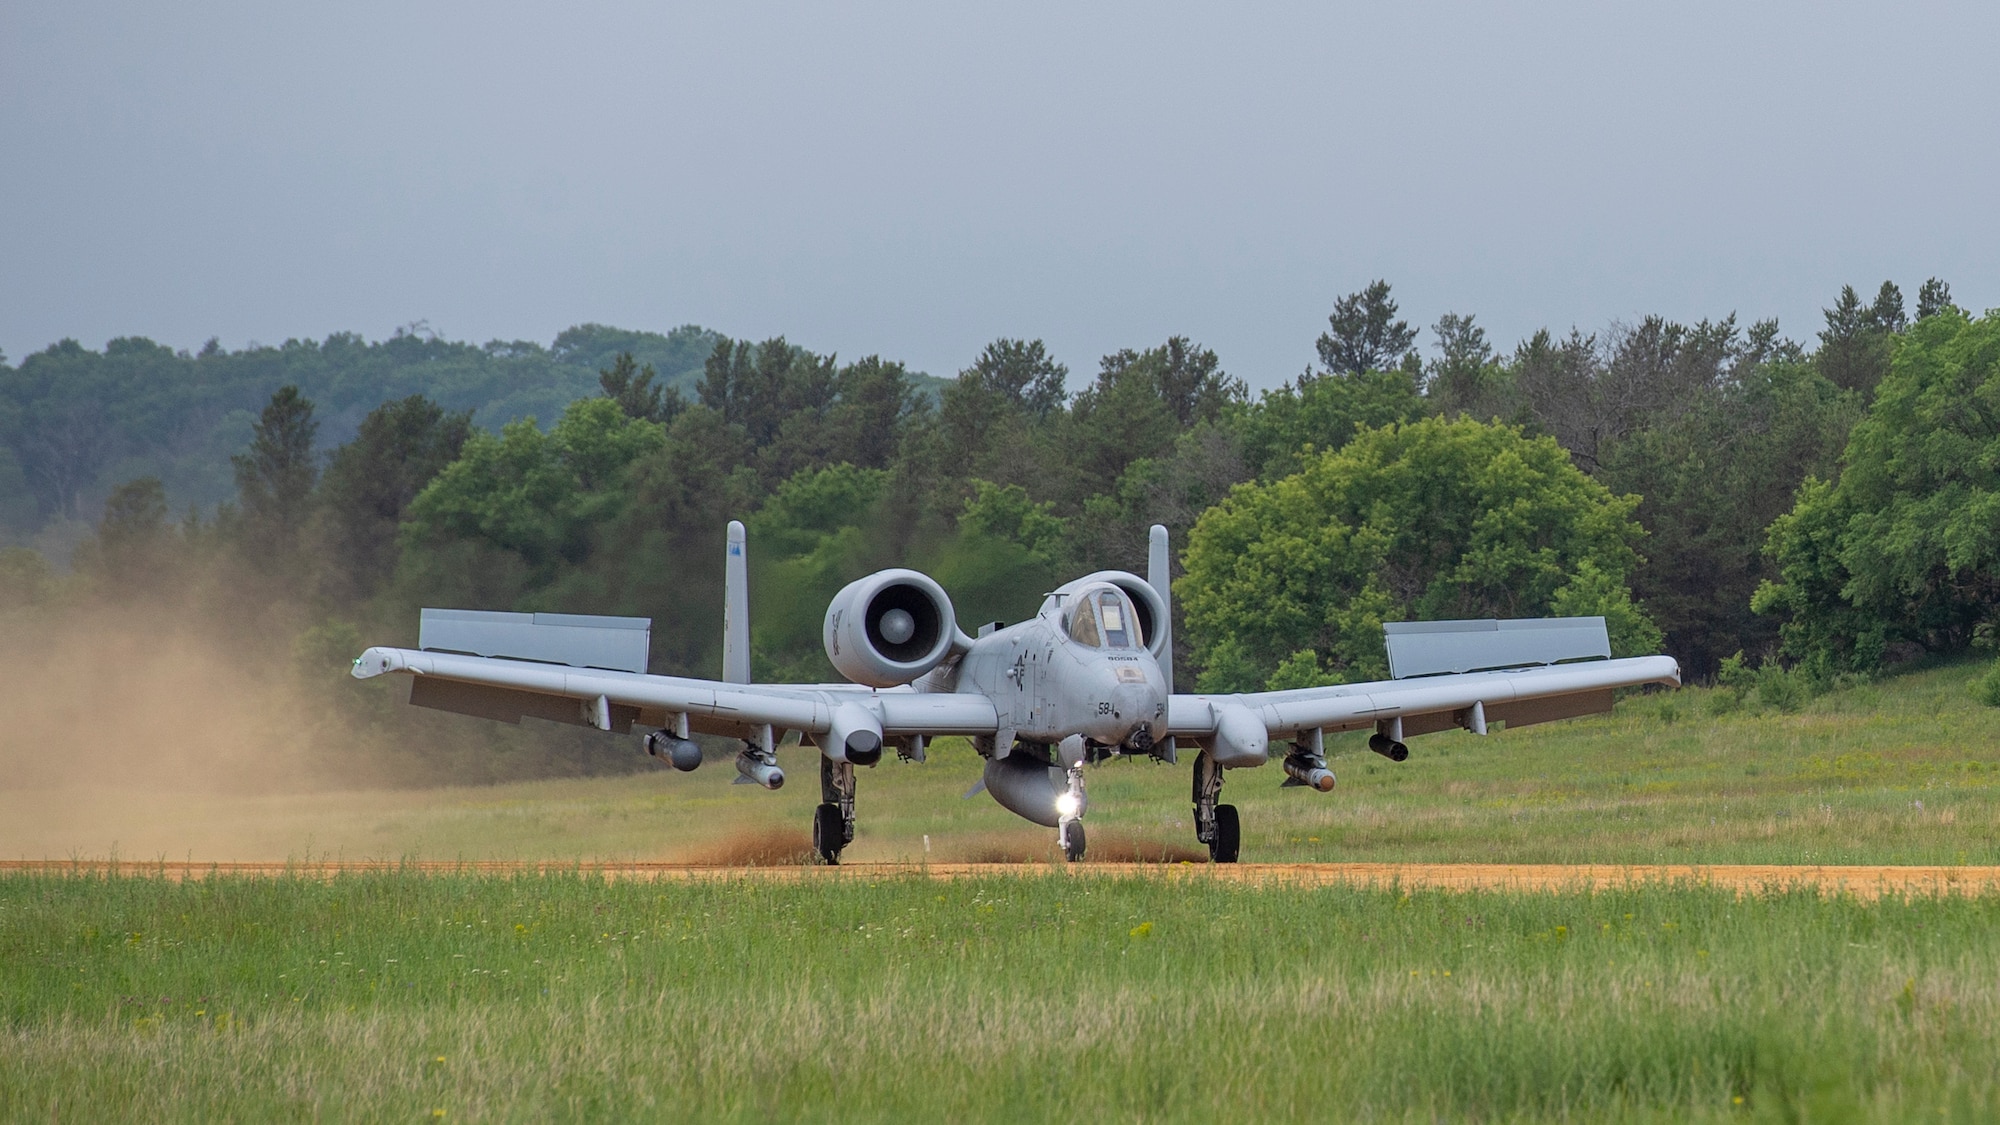 An A-10 Thunderbolt II landing on a dirt runway